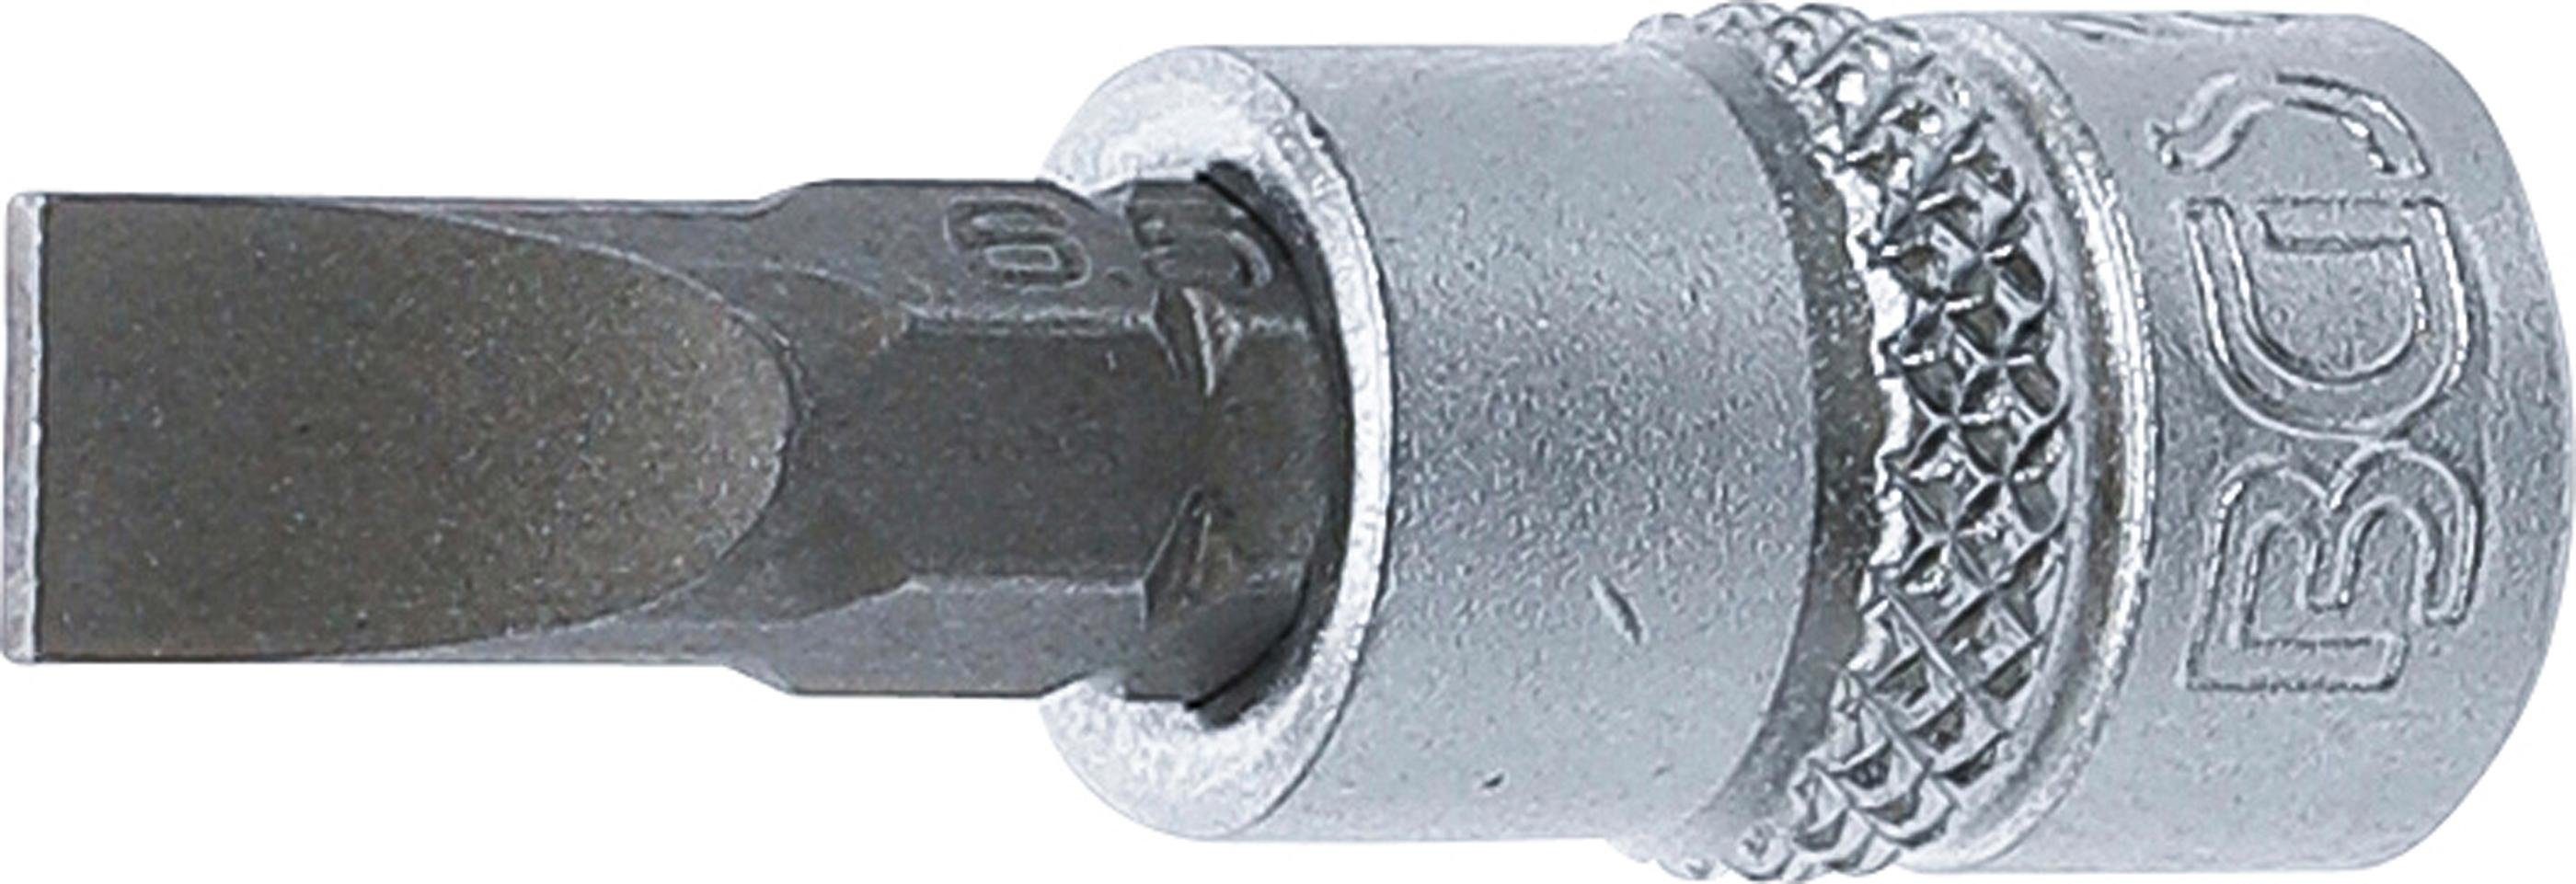 BGS technic Bit-Schraubendreher Bit-Einsatz, Antrieb Innenvierkant 6,3 mm (1/4), Schlitz 6,5 mm